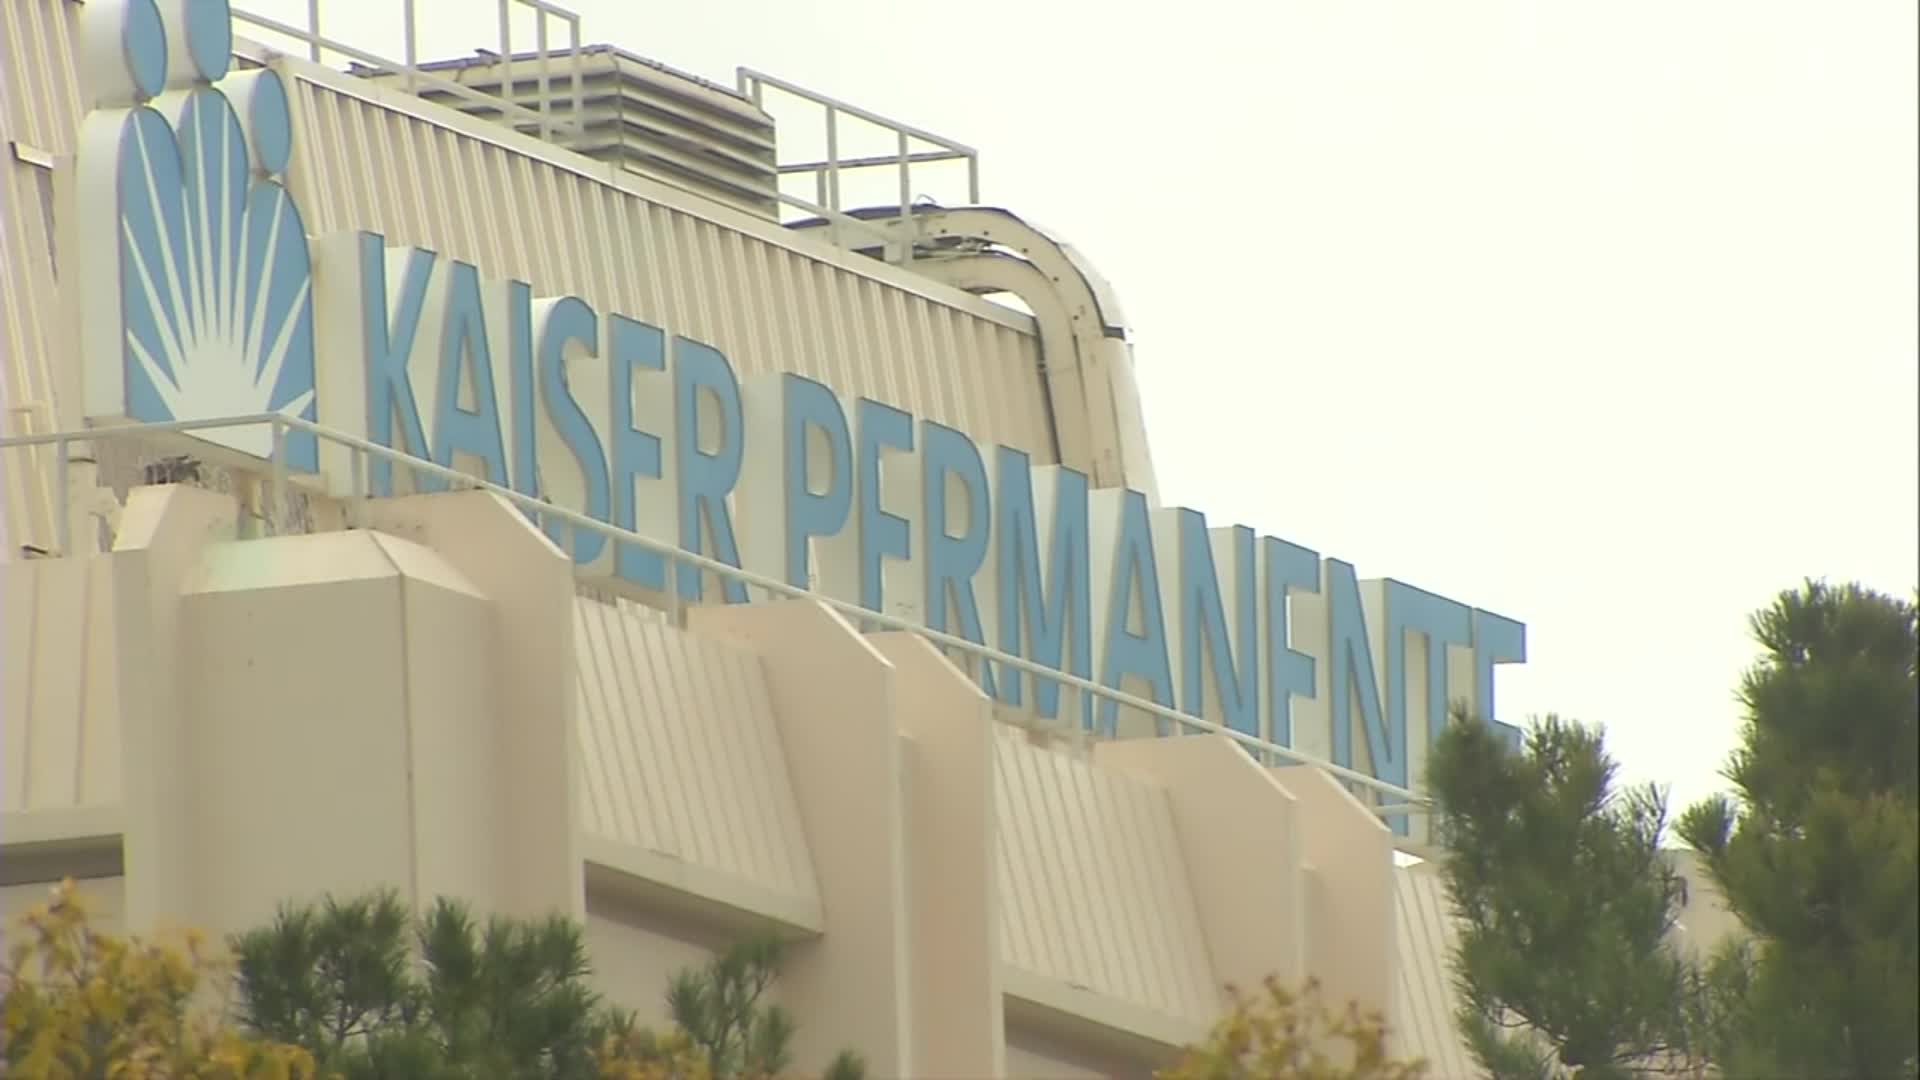 Kaiser Permanente San Jose Medical Center in San Jose, California.